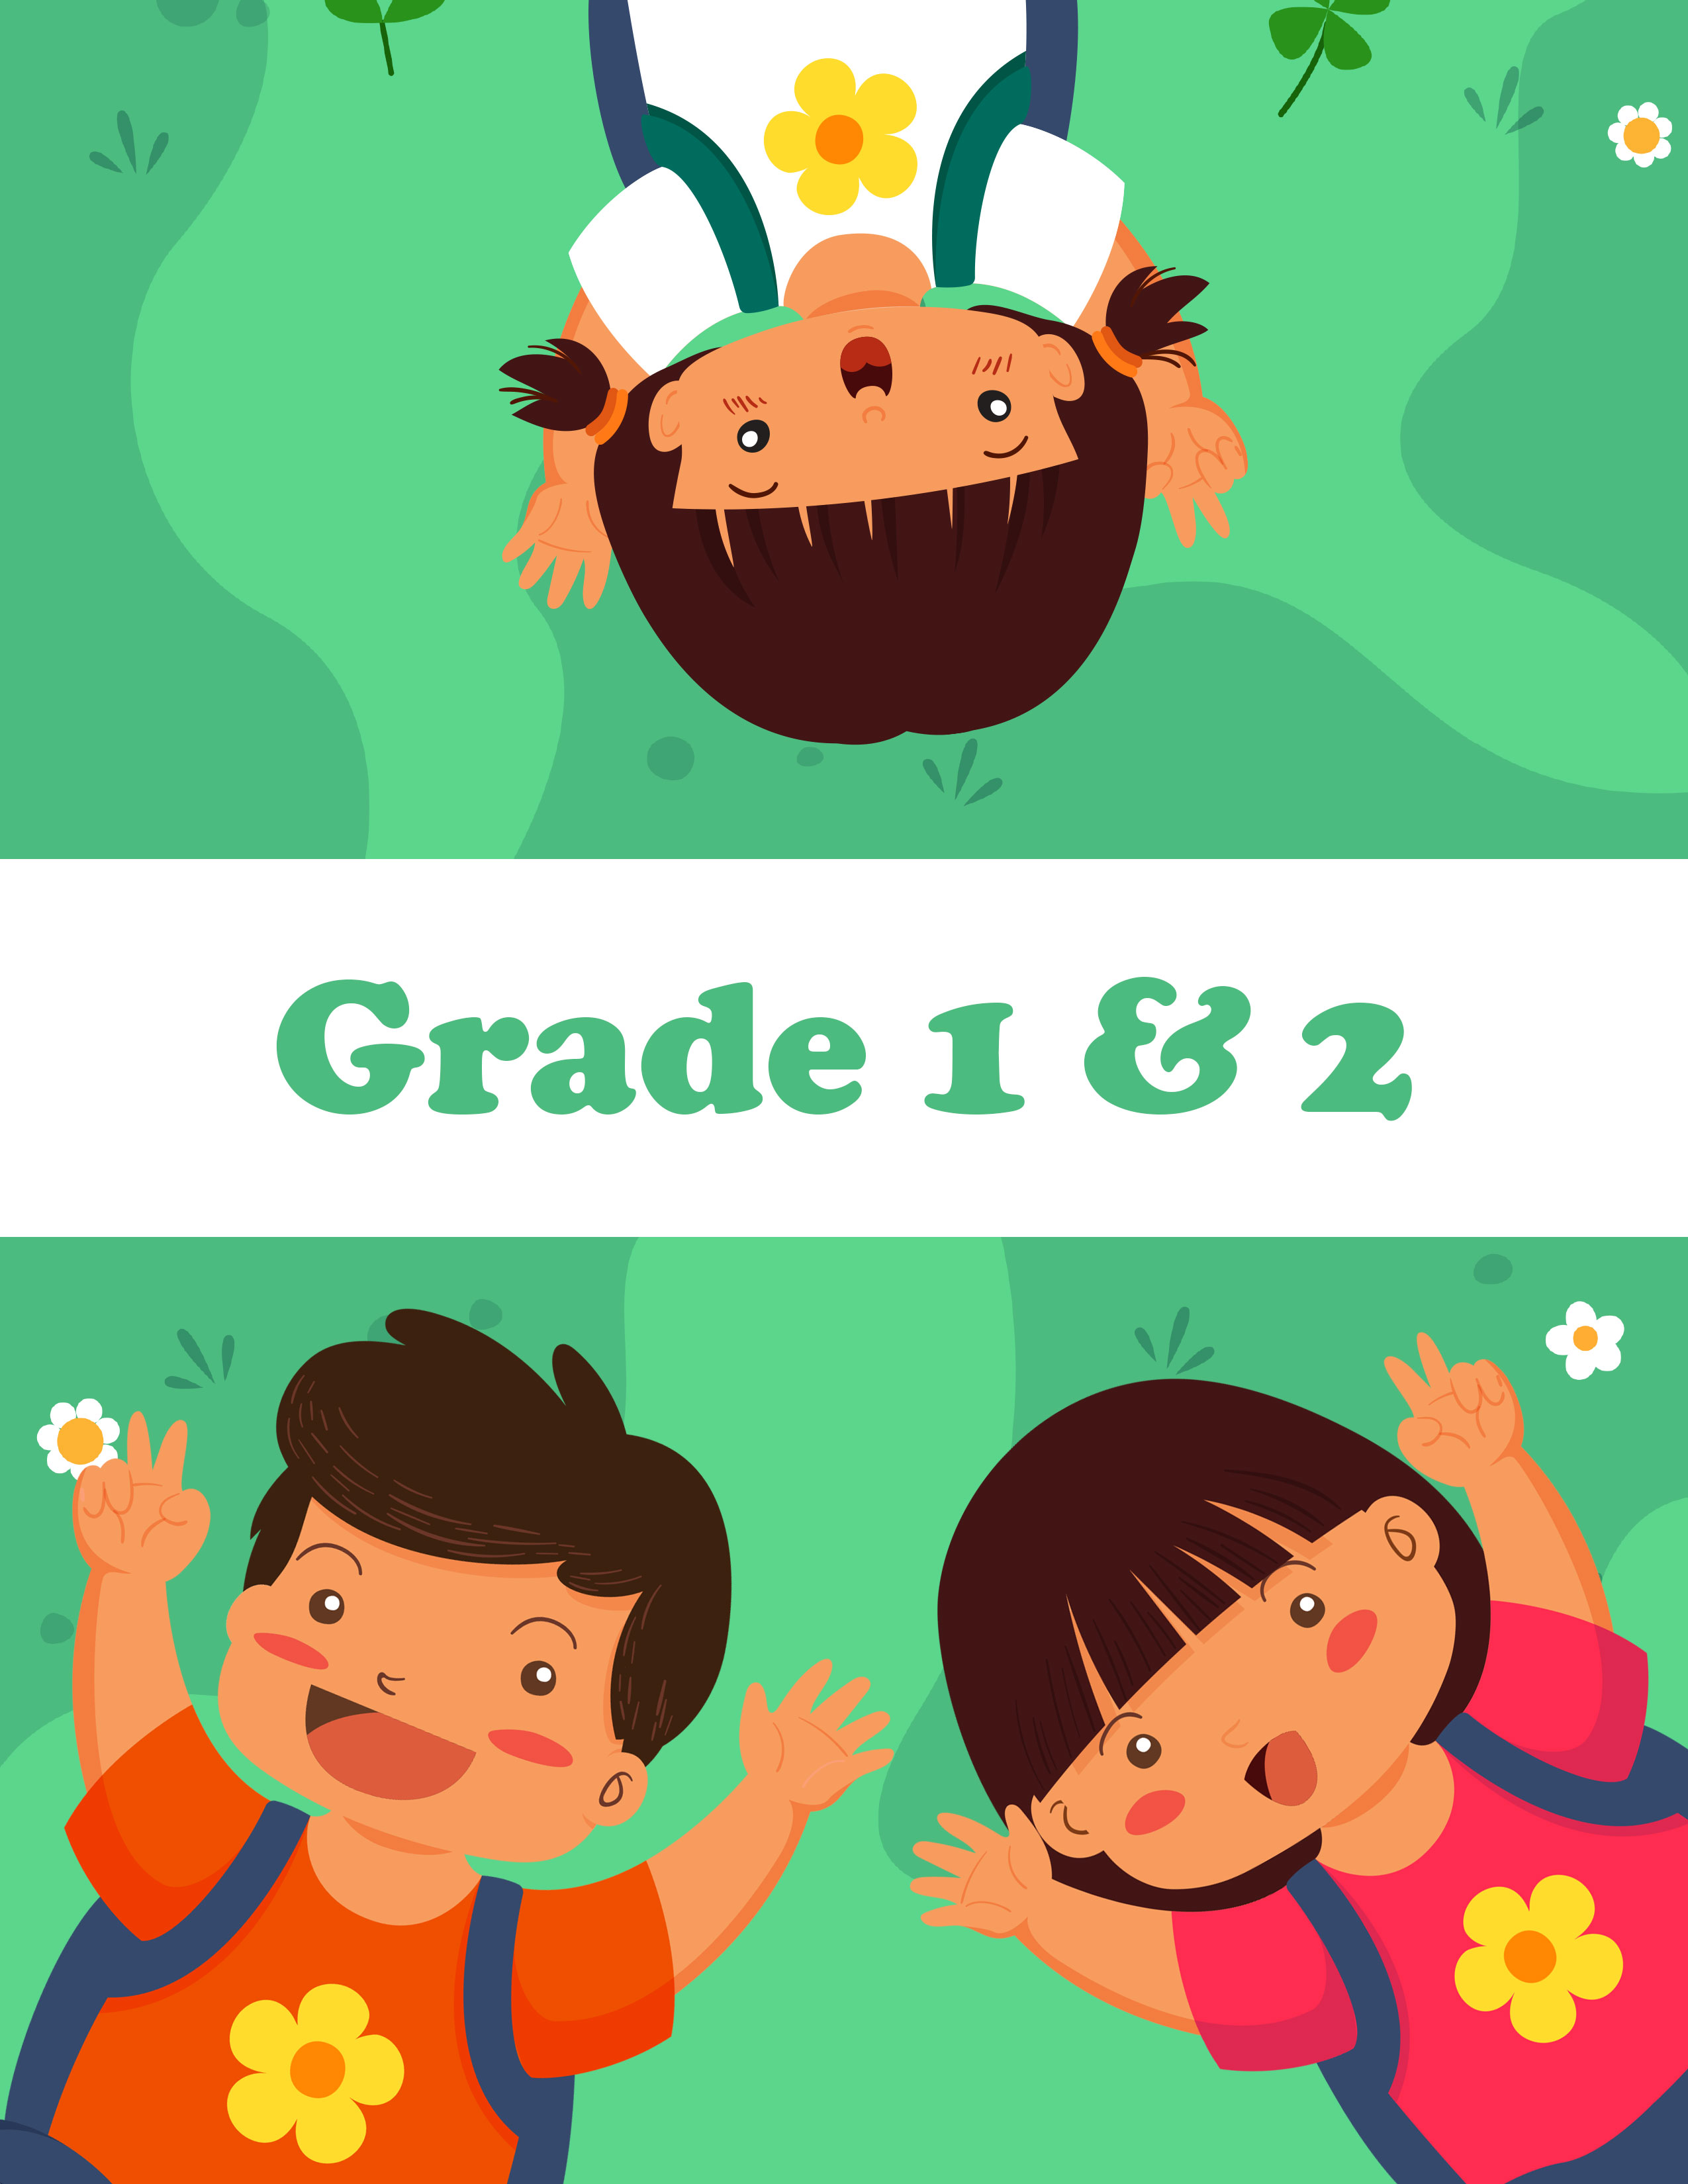 Grade-1-&-2.jpg